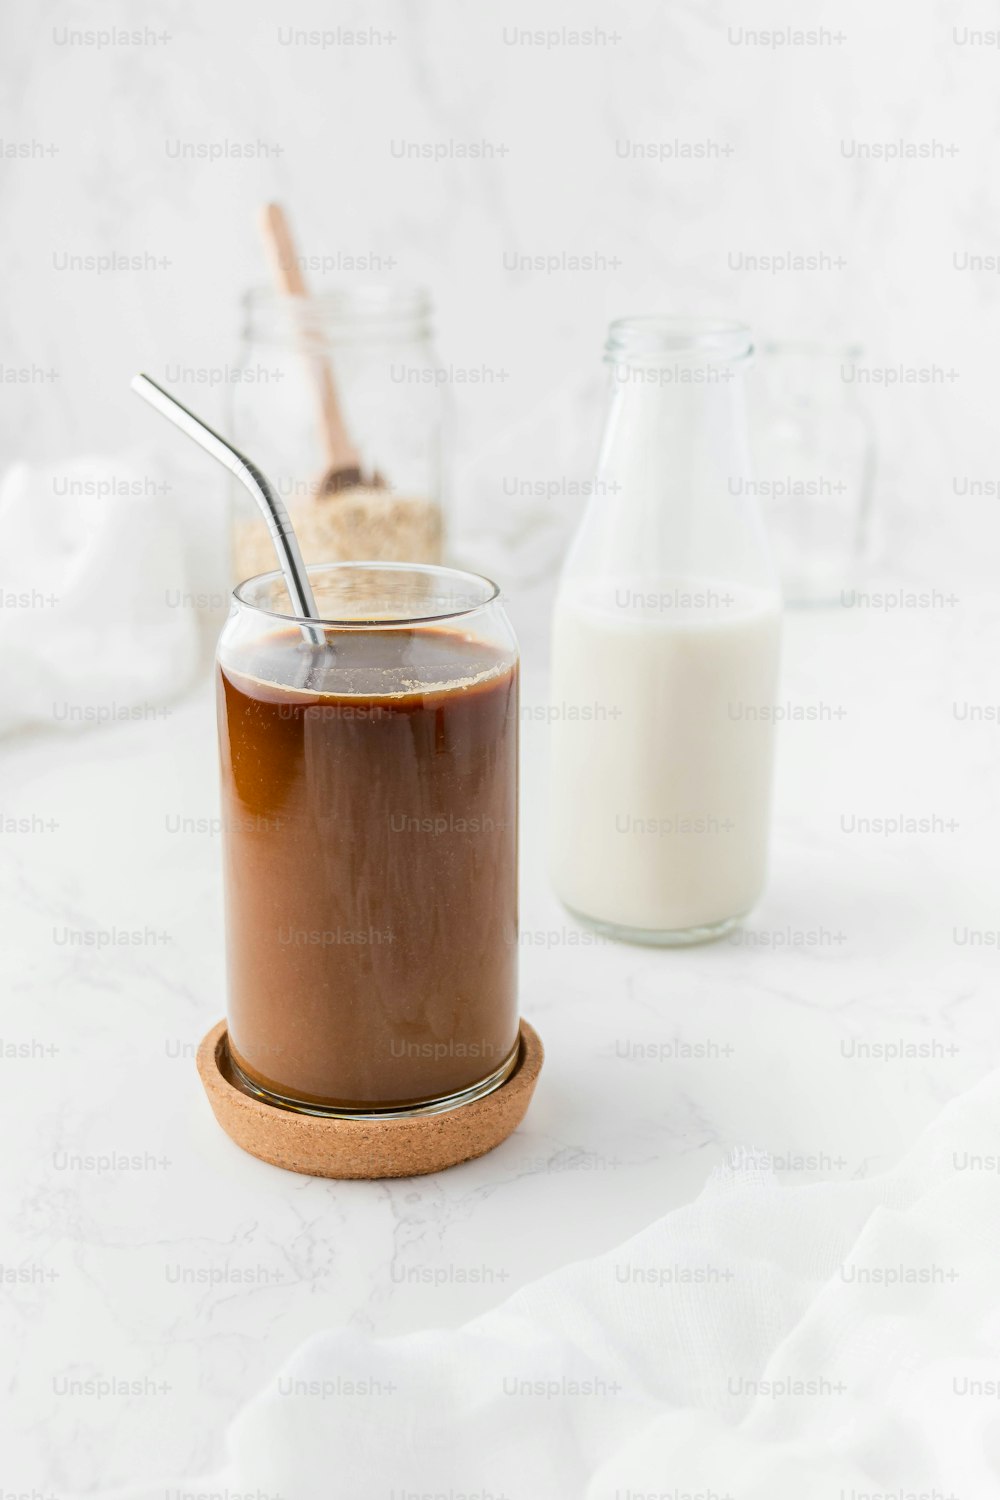 um pote de pudim de chocolate ao lado de um copo de leite